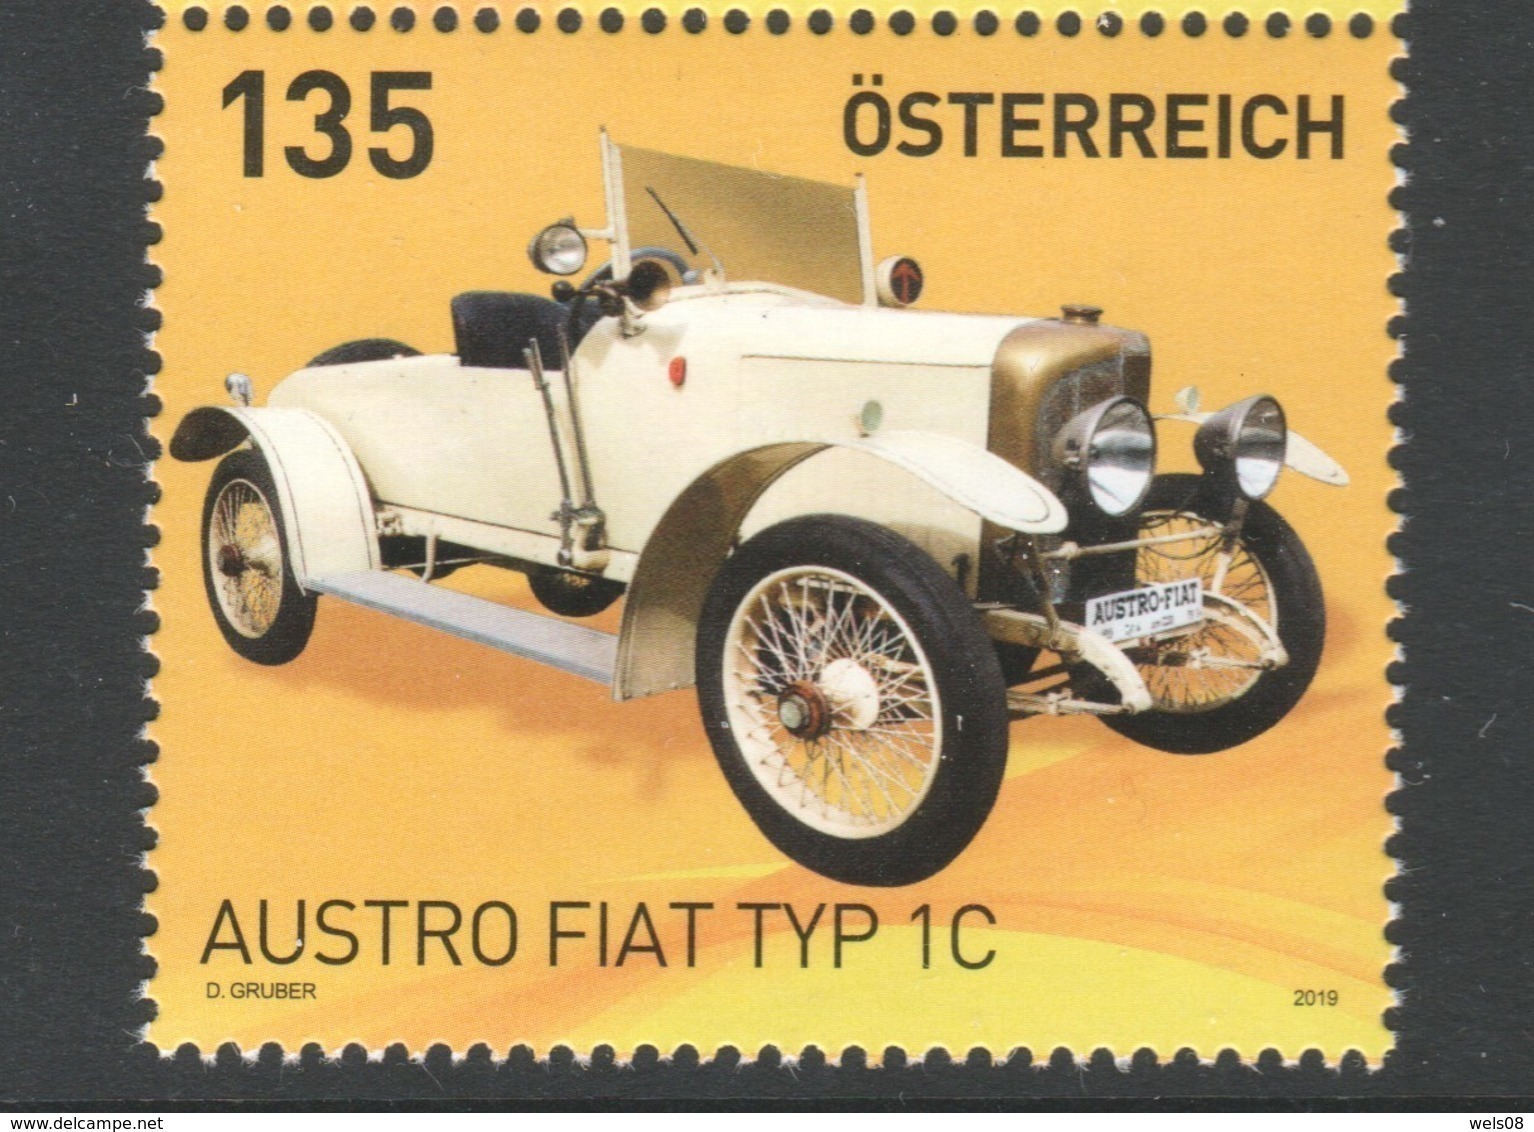 Österreich 2019: "Austro Fiat Typ 1C" Postfrisch - Ungebraucht